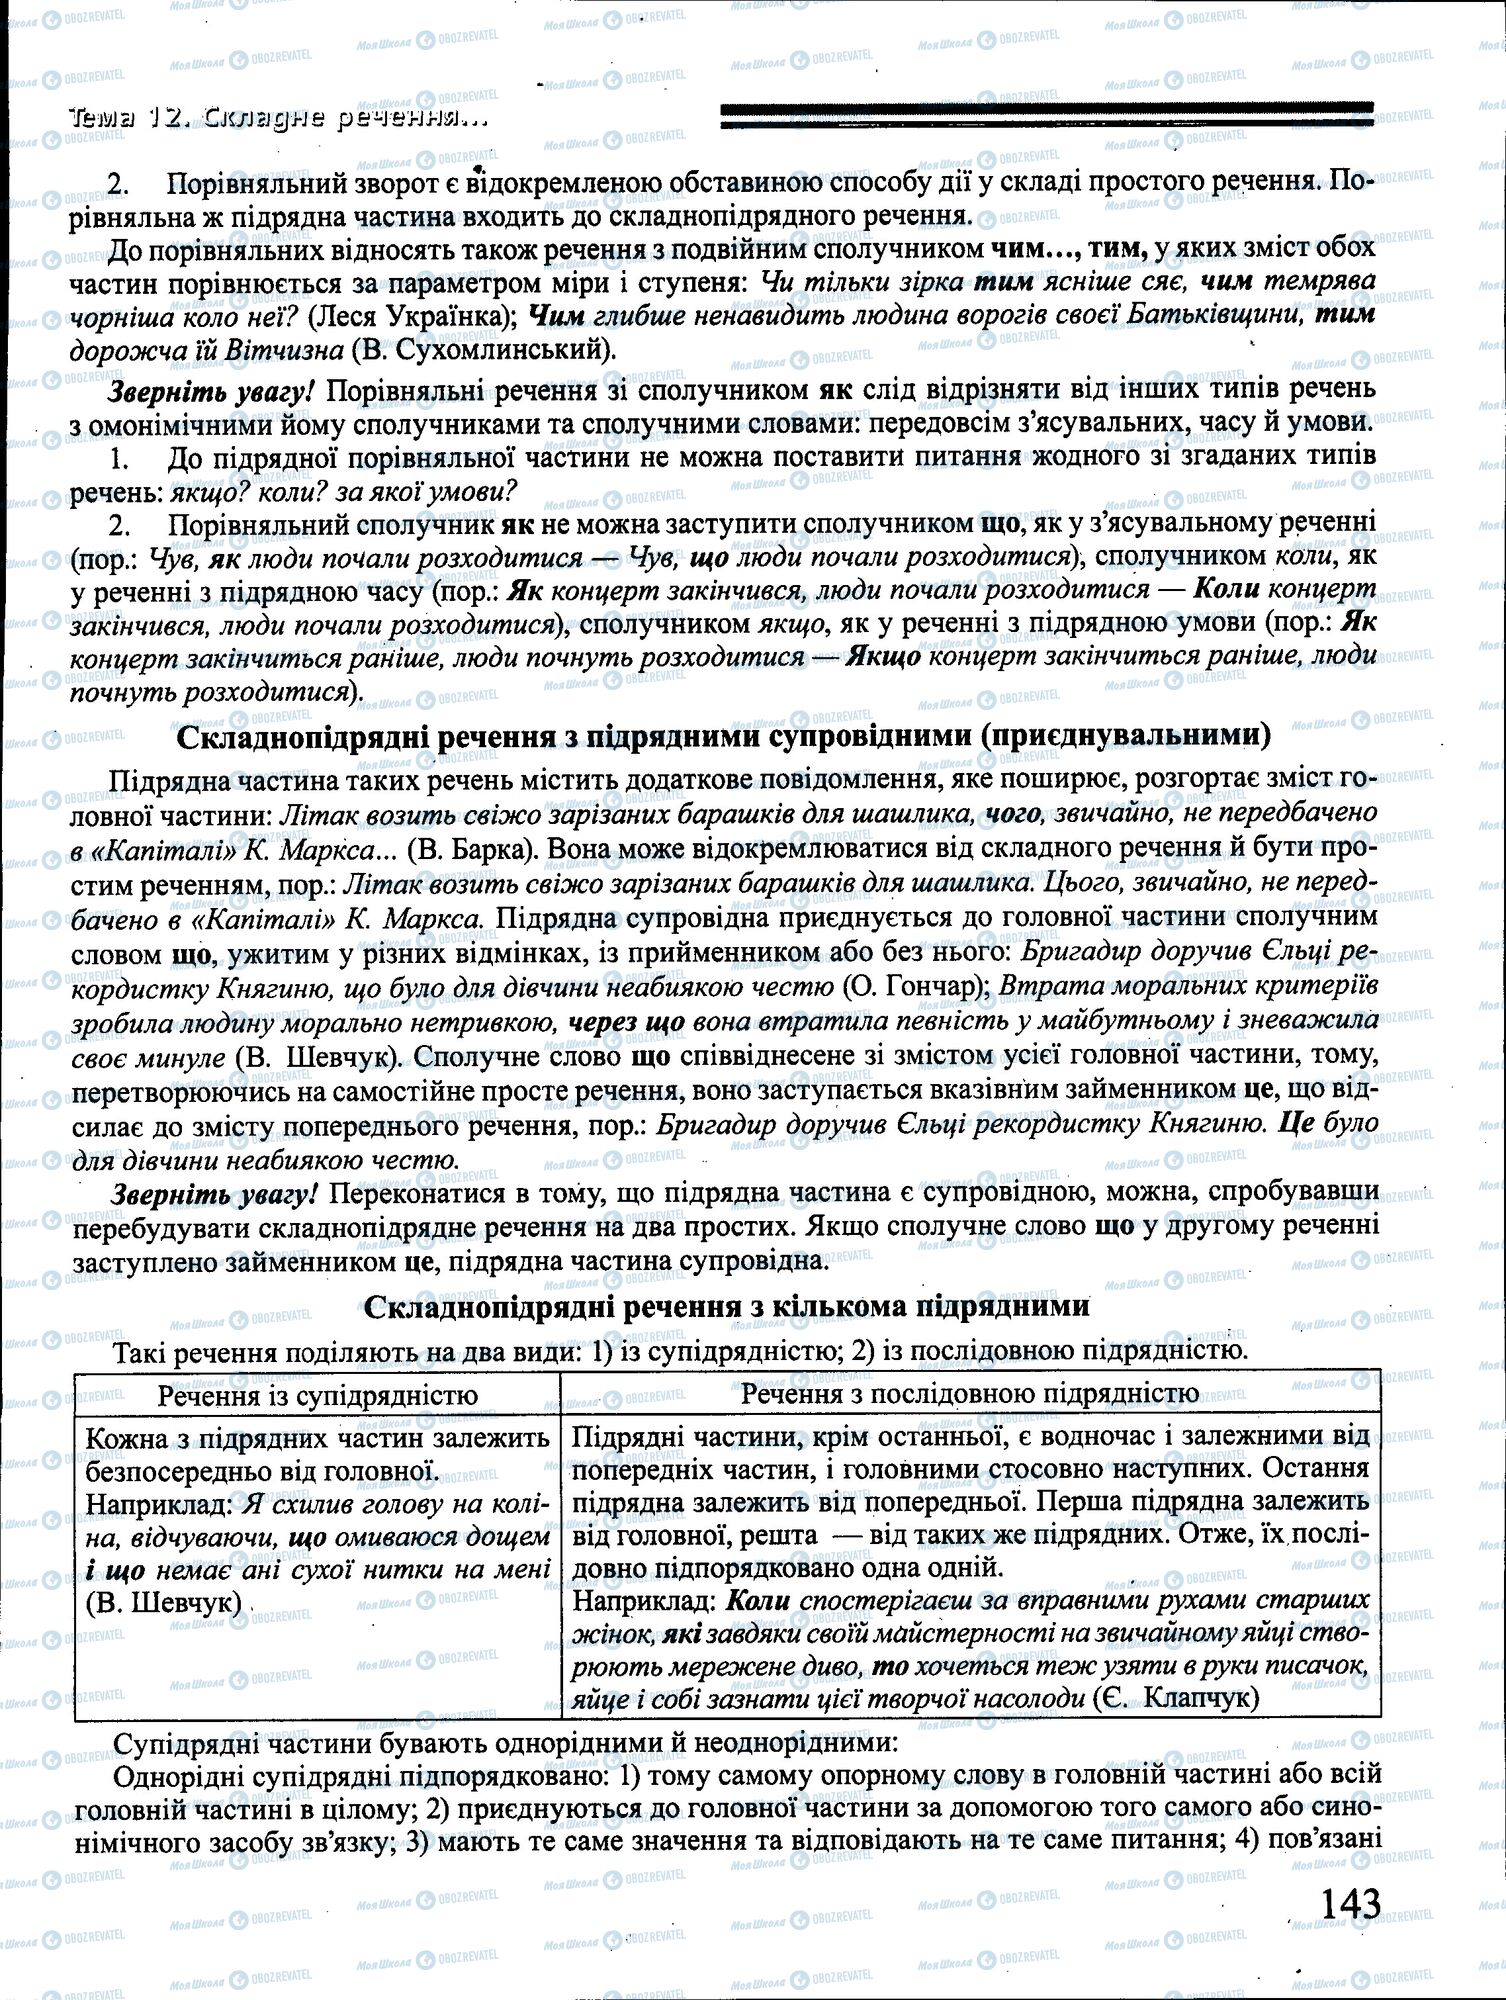 ДПА Укр мова 4 класс страница 143